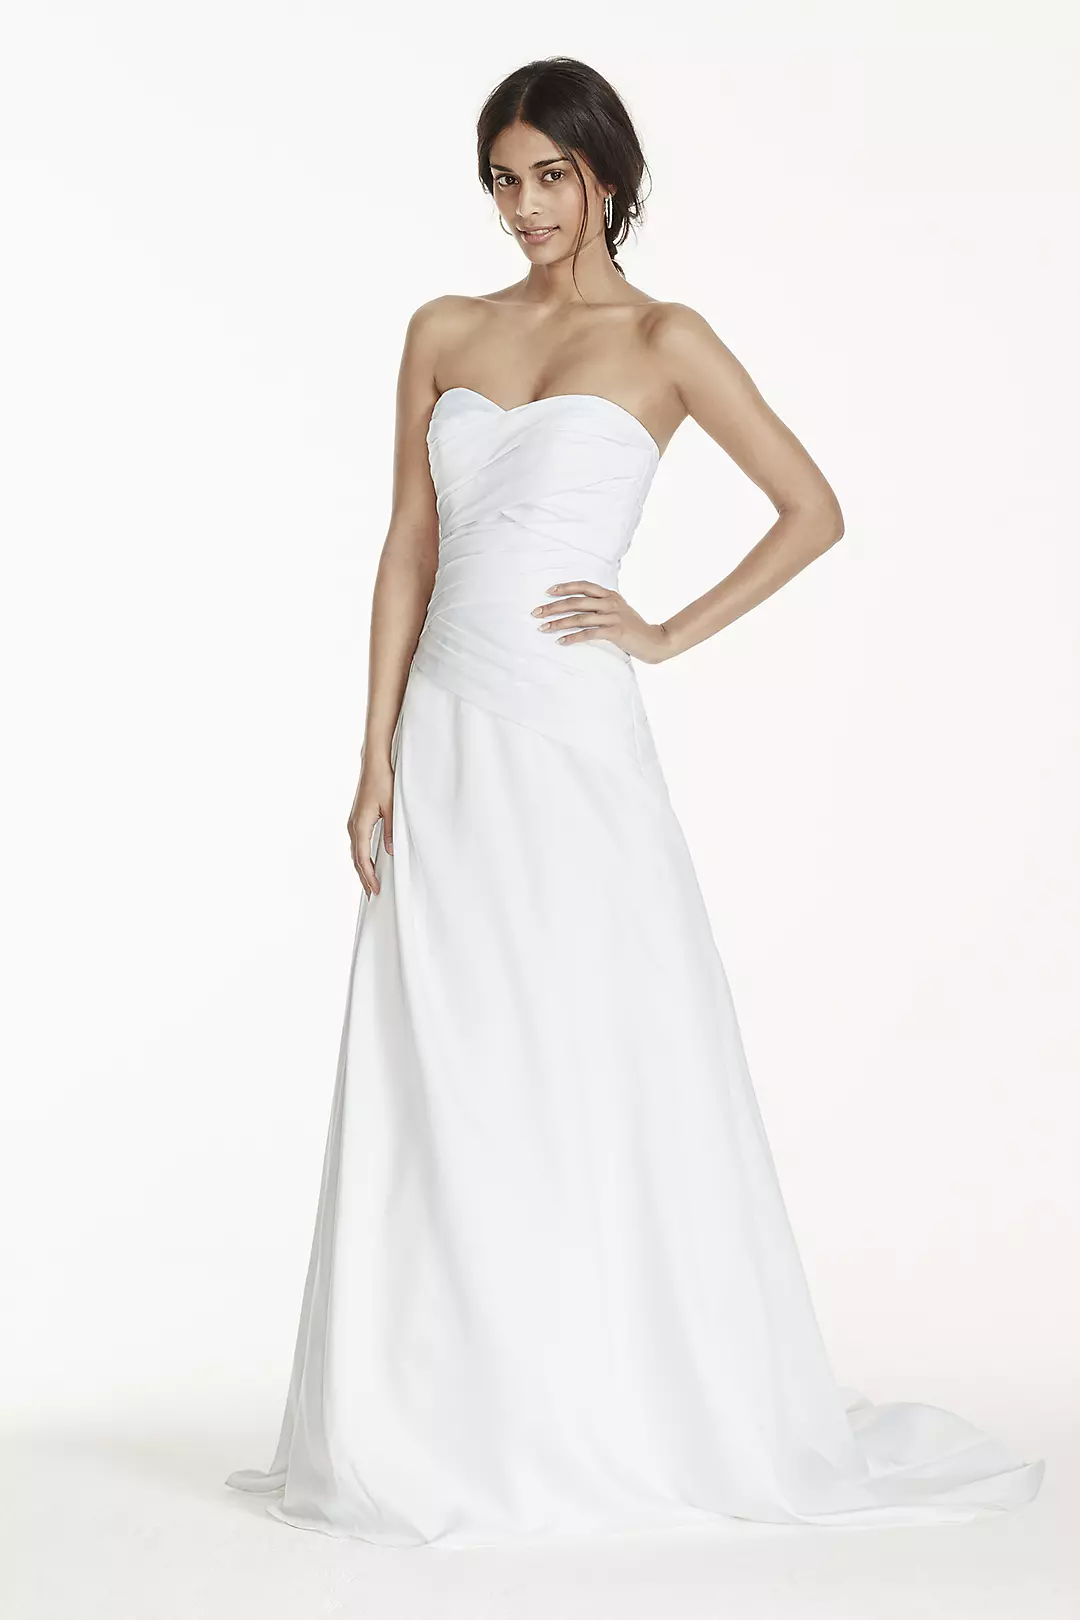 Strapless A-Line Drop Waist Wedding Dress Image